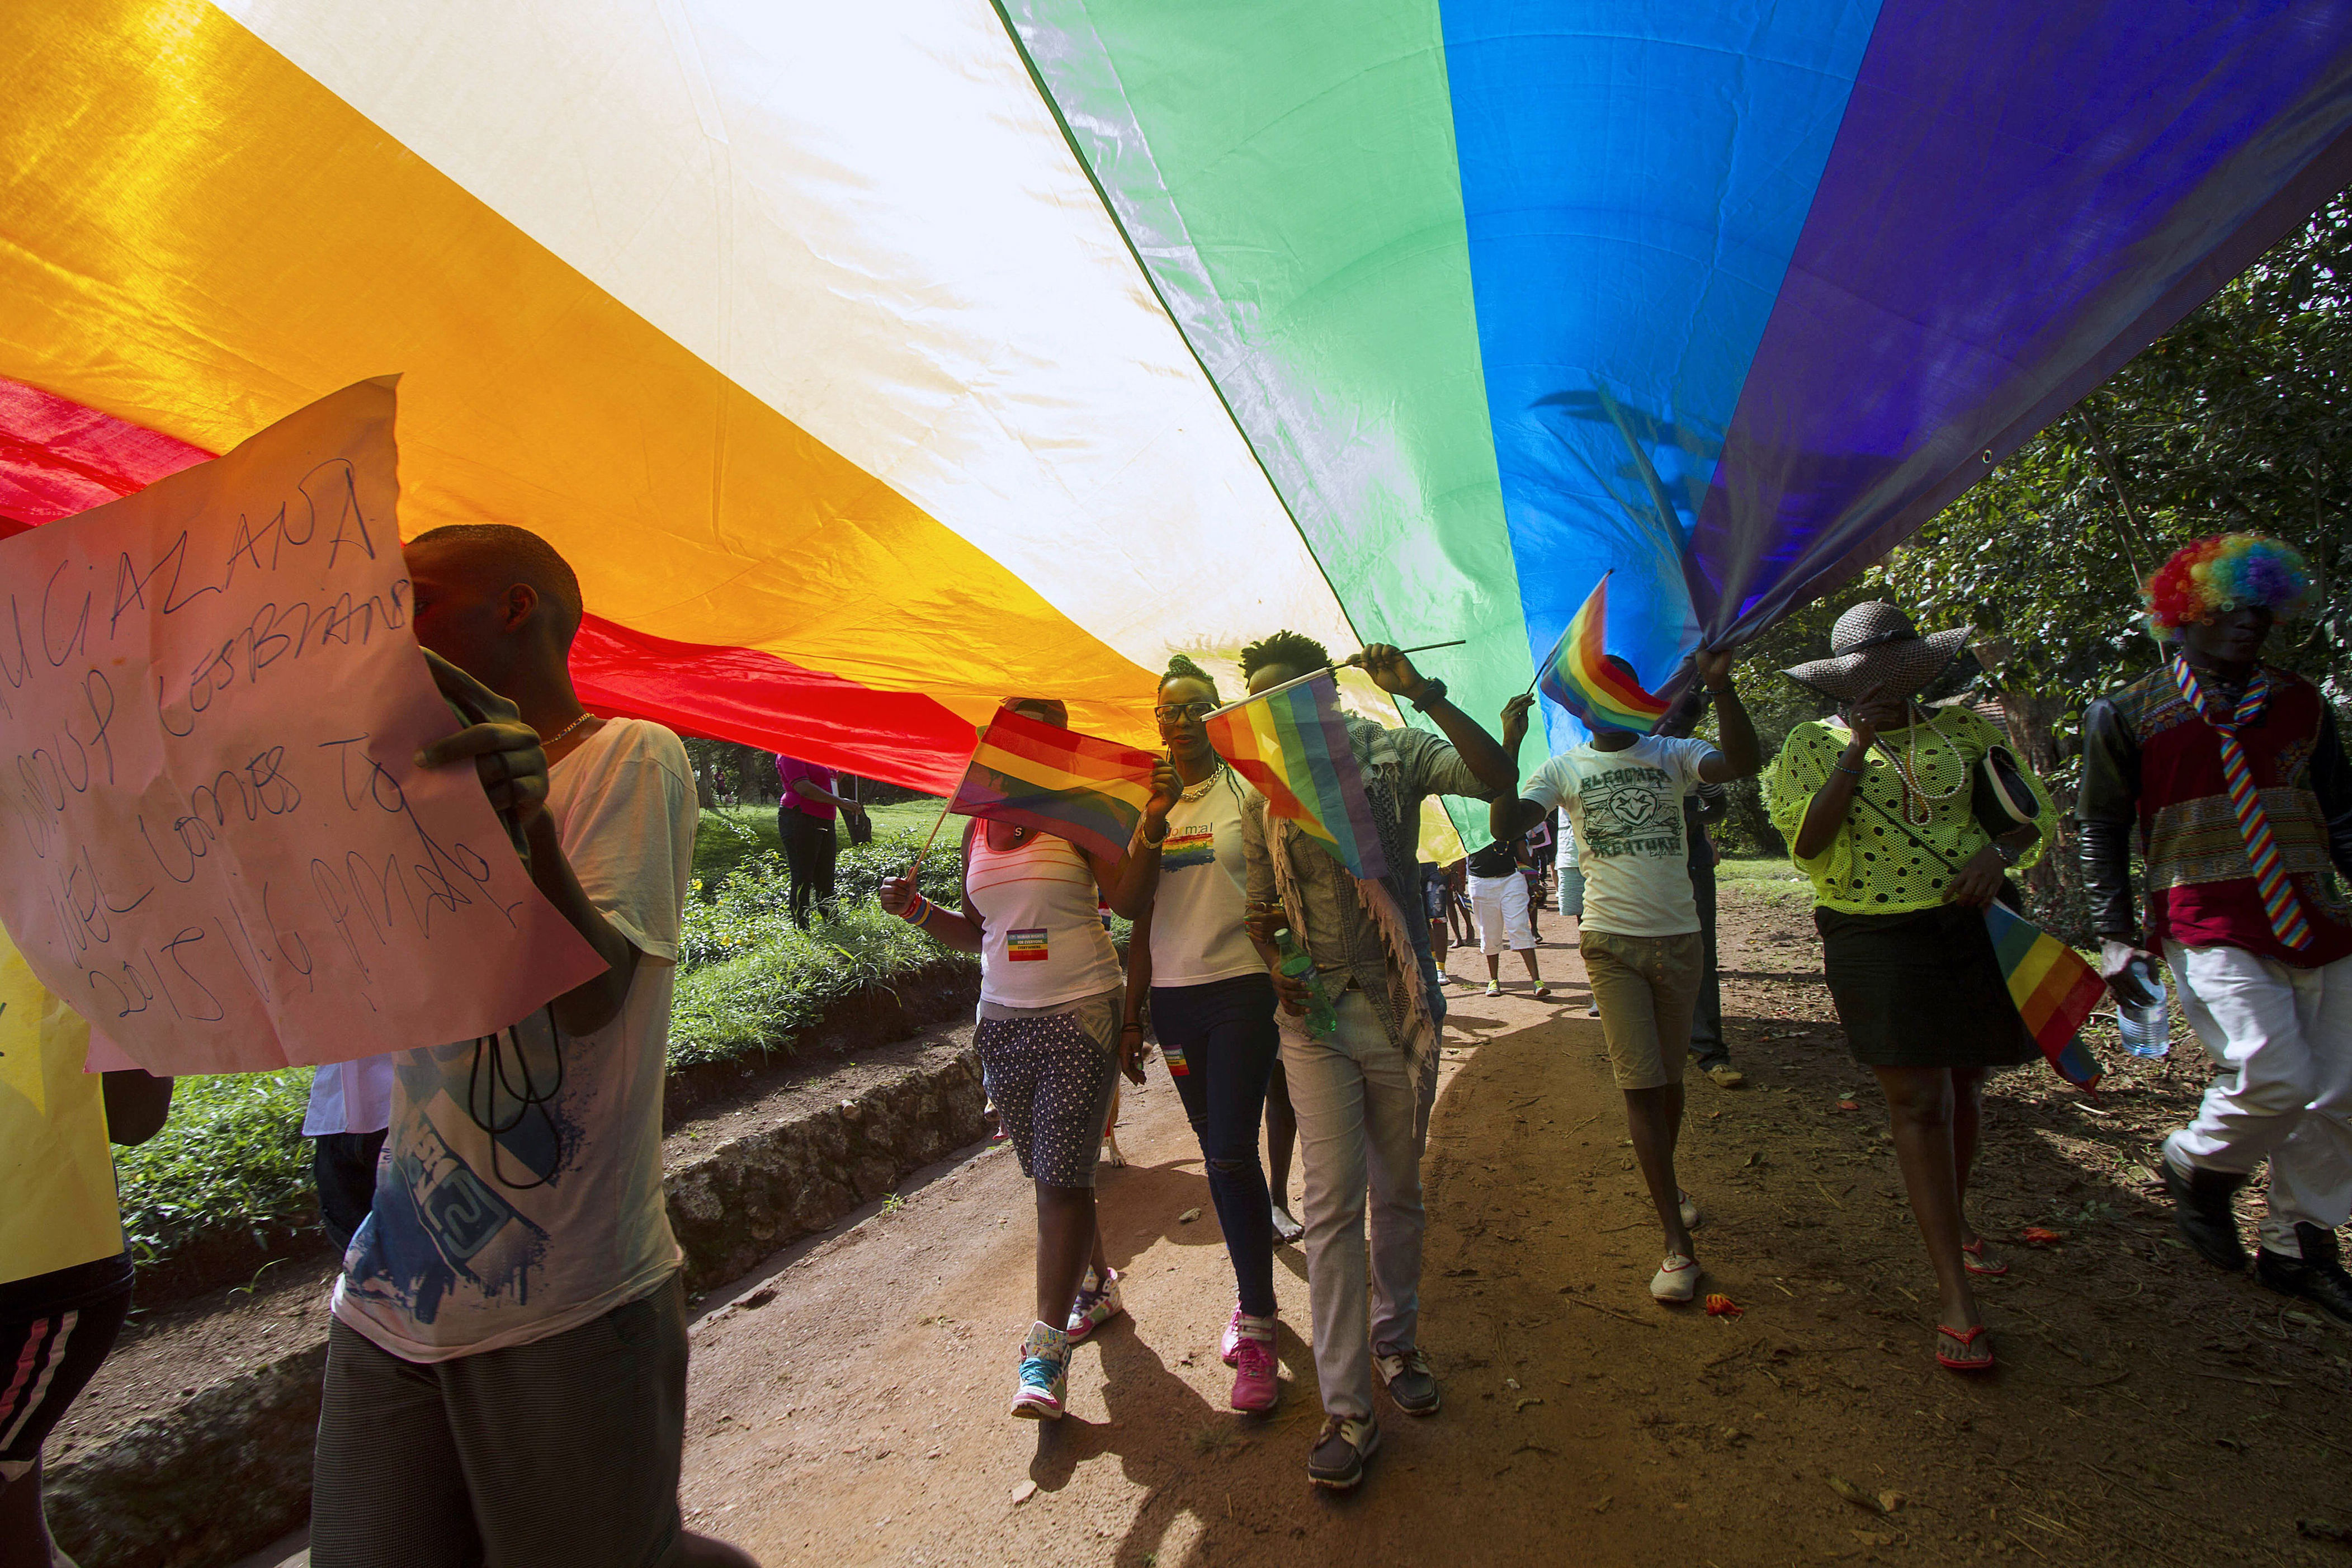 el constitucional de uganda revisa la ley contra la homosexualidad que incluye la pena de muerte para gays, lesbianas y transexuales